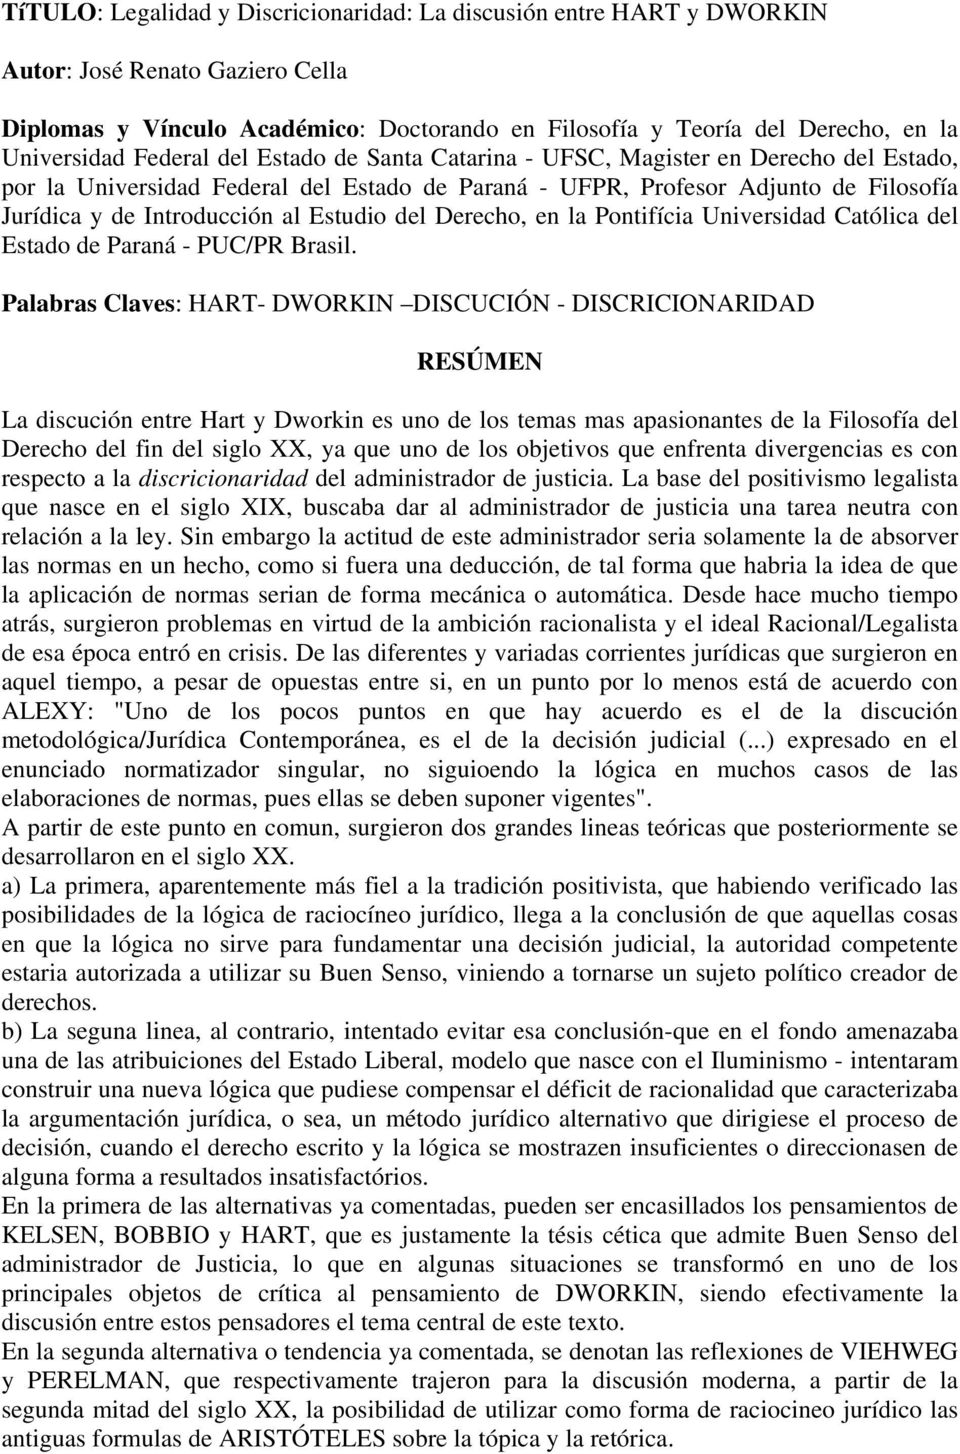 Estudio del Derecho, en la Pontifícia Universidad Católica del Estado de Paraná - PUC/PR Brasil.